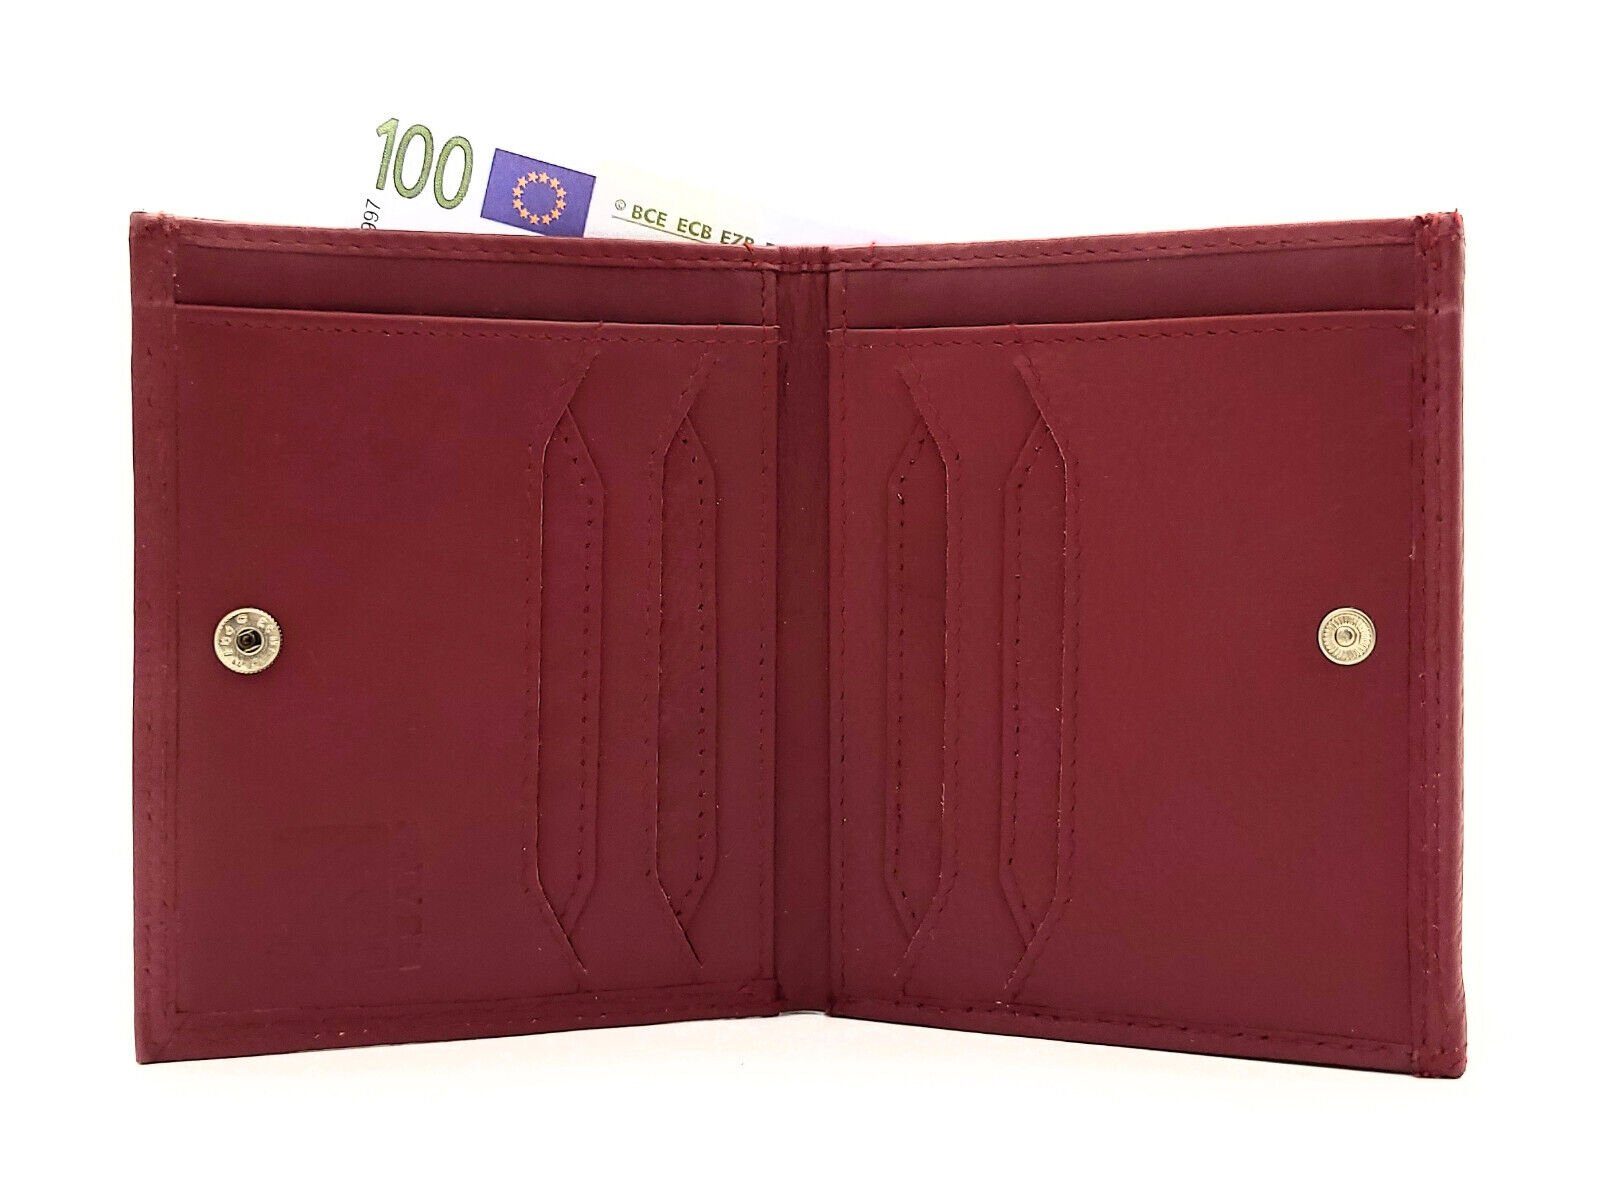 Portemonnaie Leder RFID echt JOCKEY CLUB Münzfach, Schutz, Schachtel extra Wiener Farbe Geldbörse großes cherry mit rot